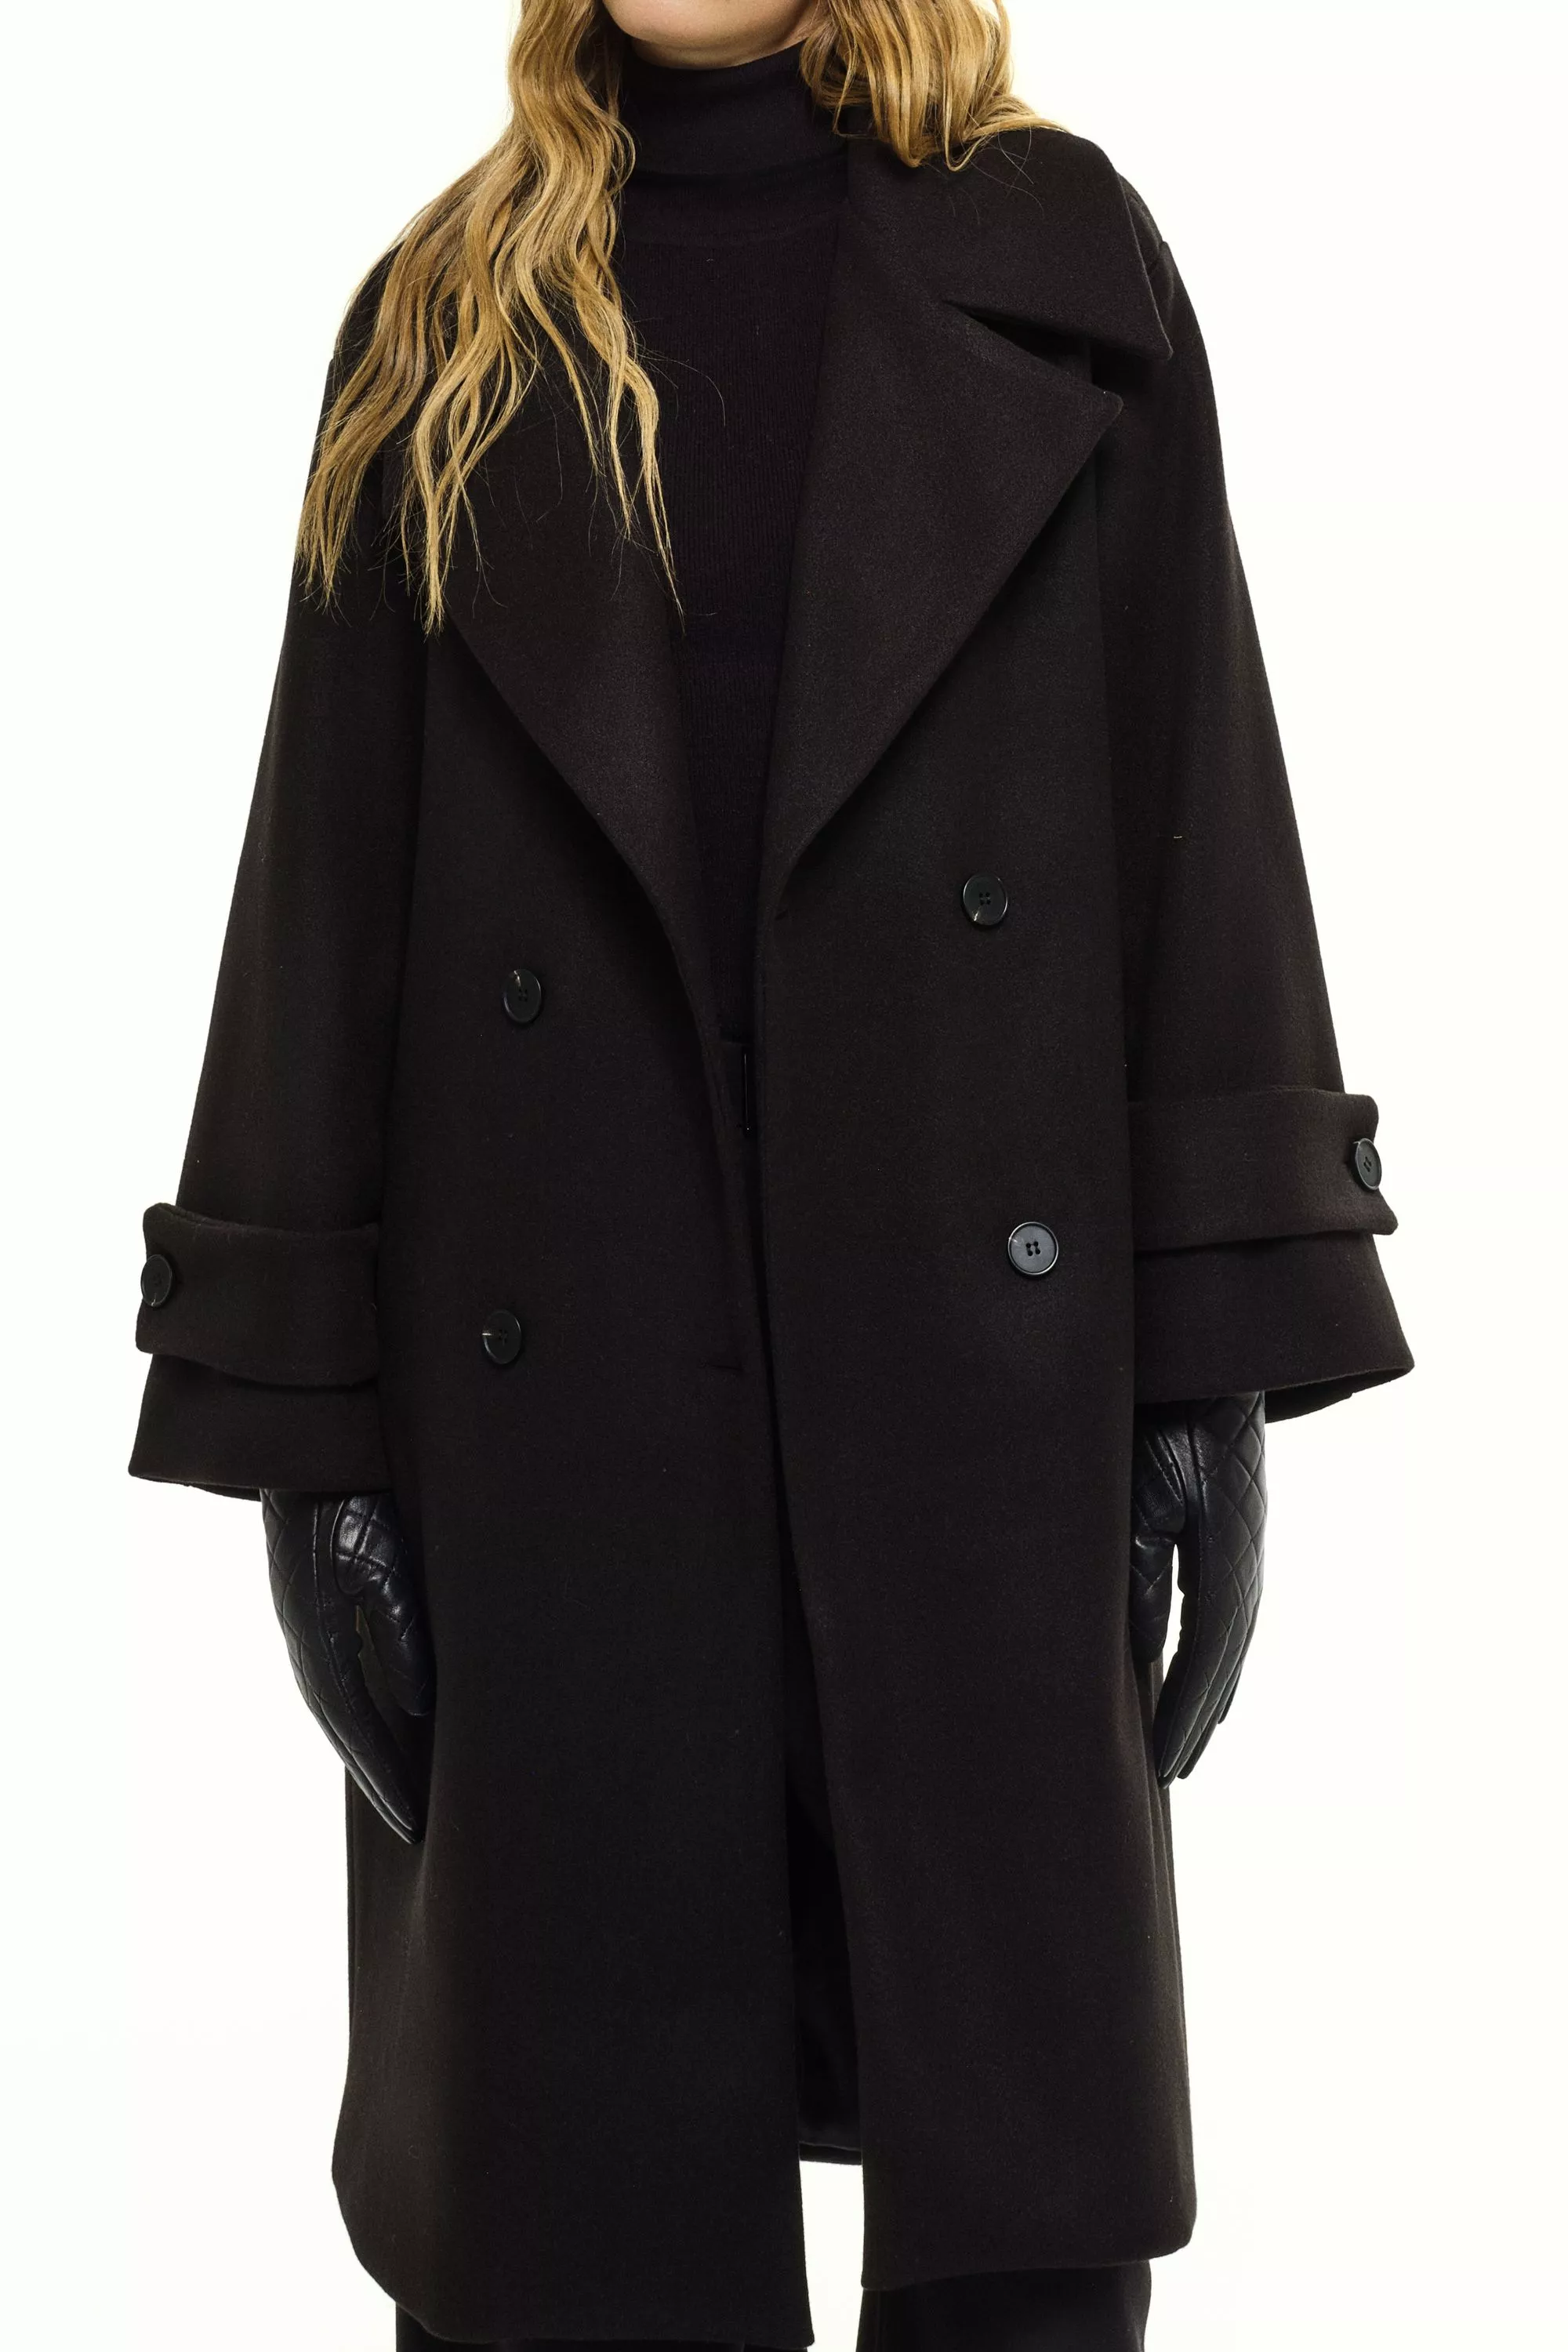 Damen Zweireihiger Mantel in Schwarz von Ricano, Detailansicht am Model